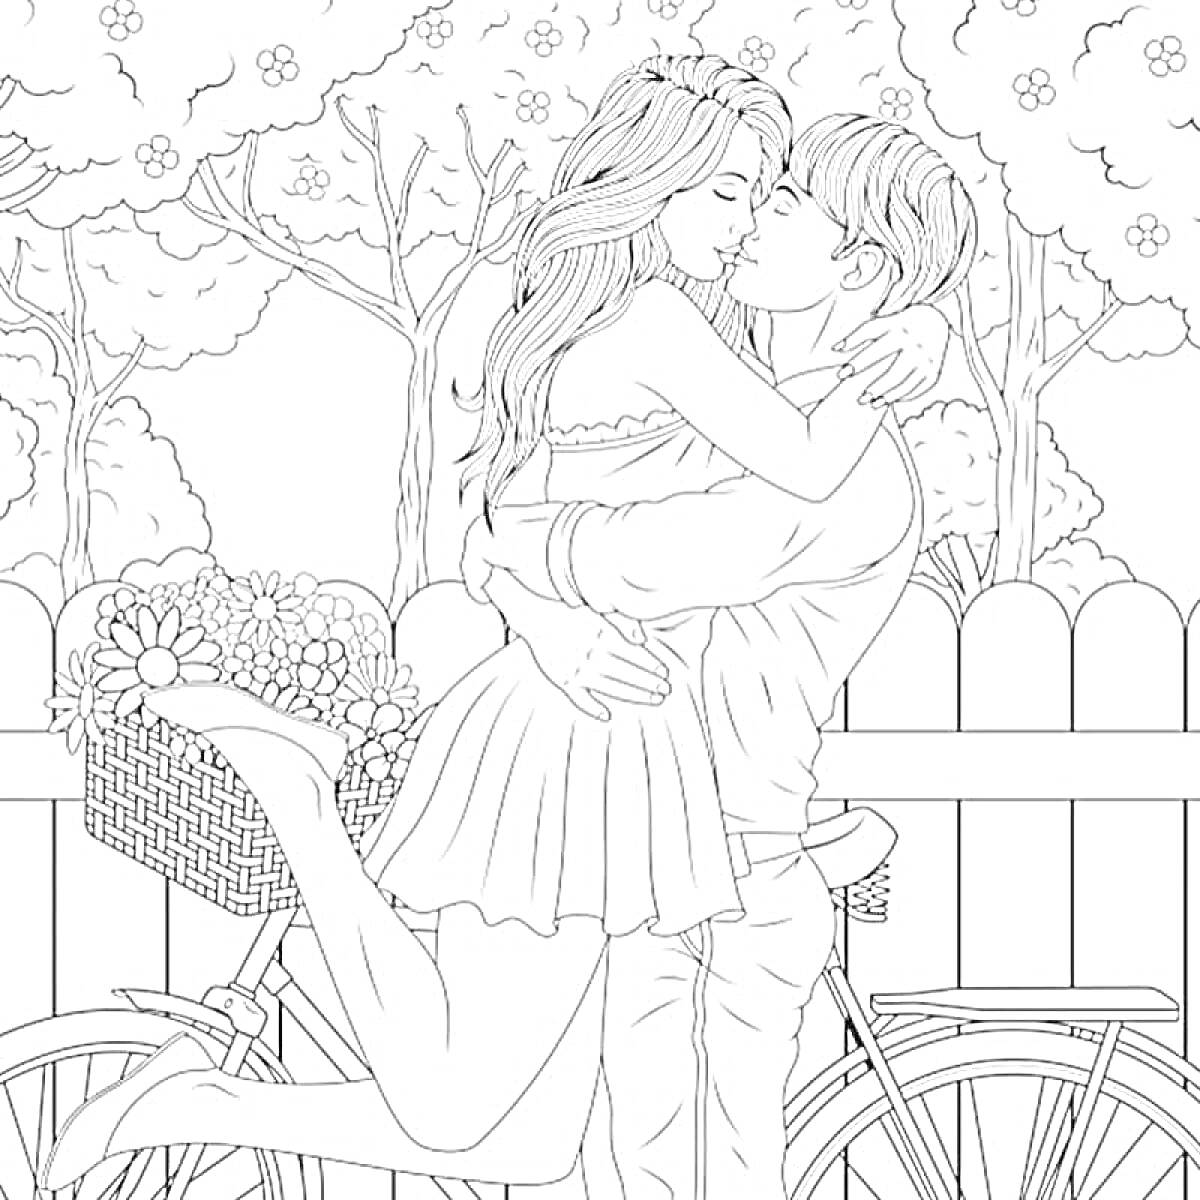 Раскраска Пара влюблённых обнимается рядом с велосипедом и цветами на фоне забора и деревьев